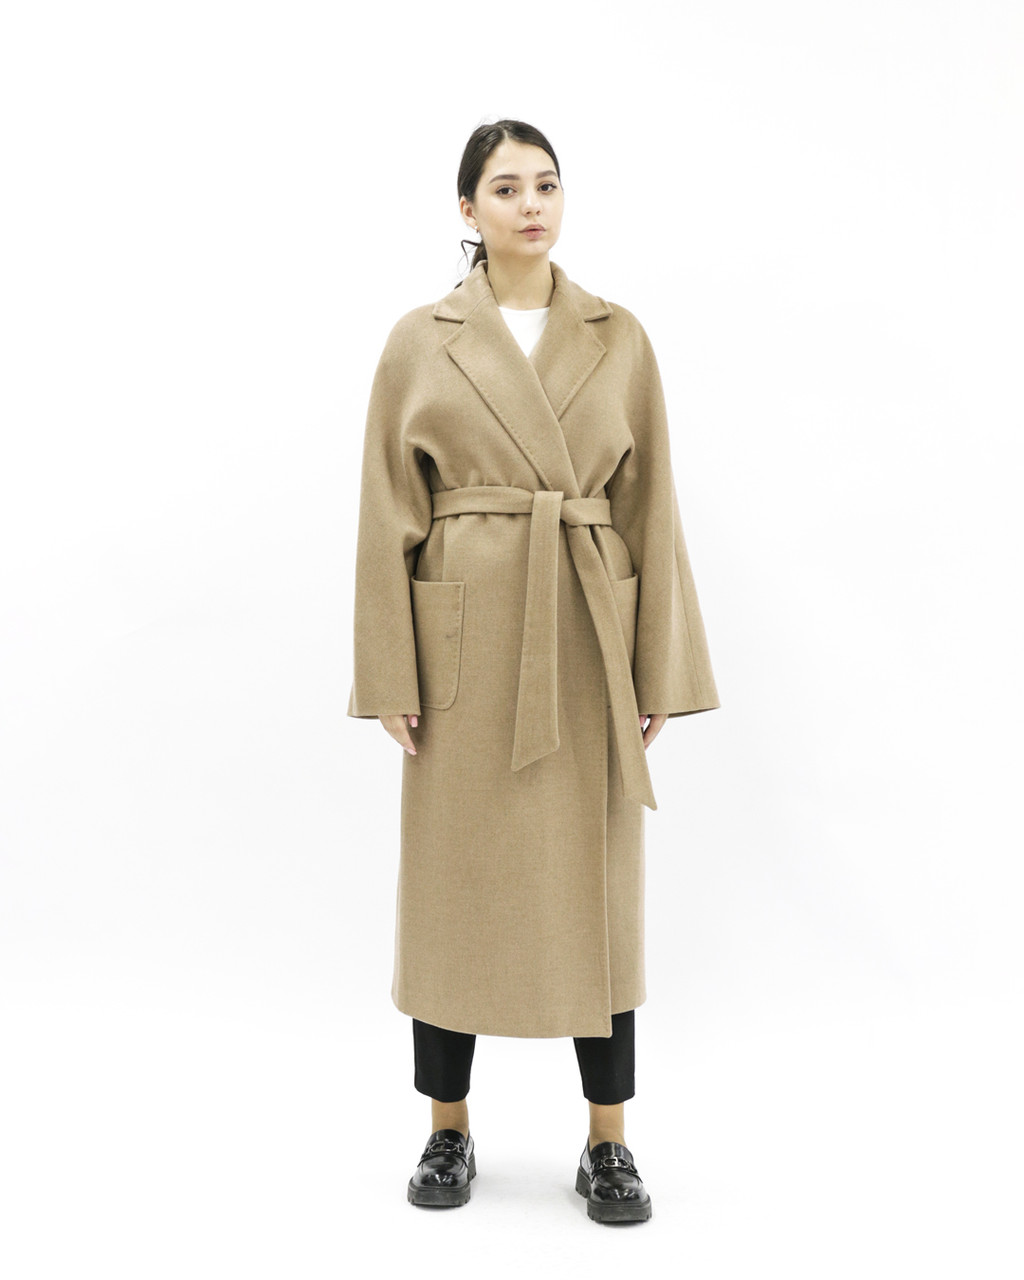 Женское пальто коричневое «UM&H 35609957» (шерсть, синтепон), фото 1